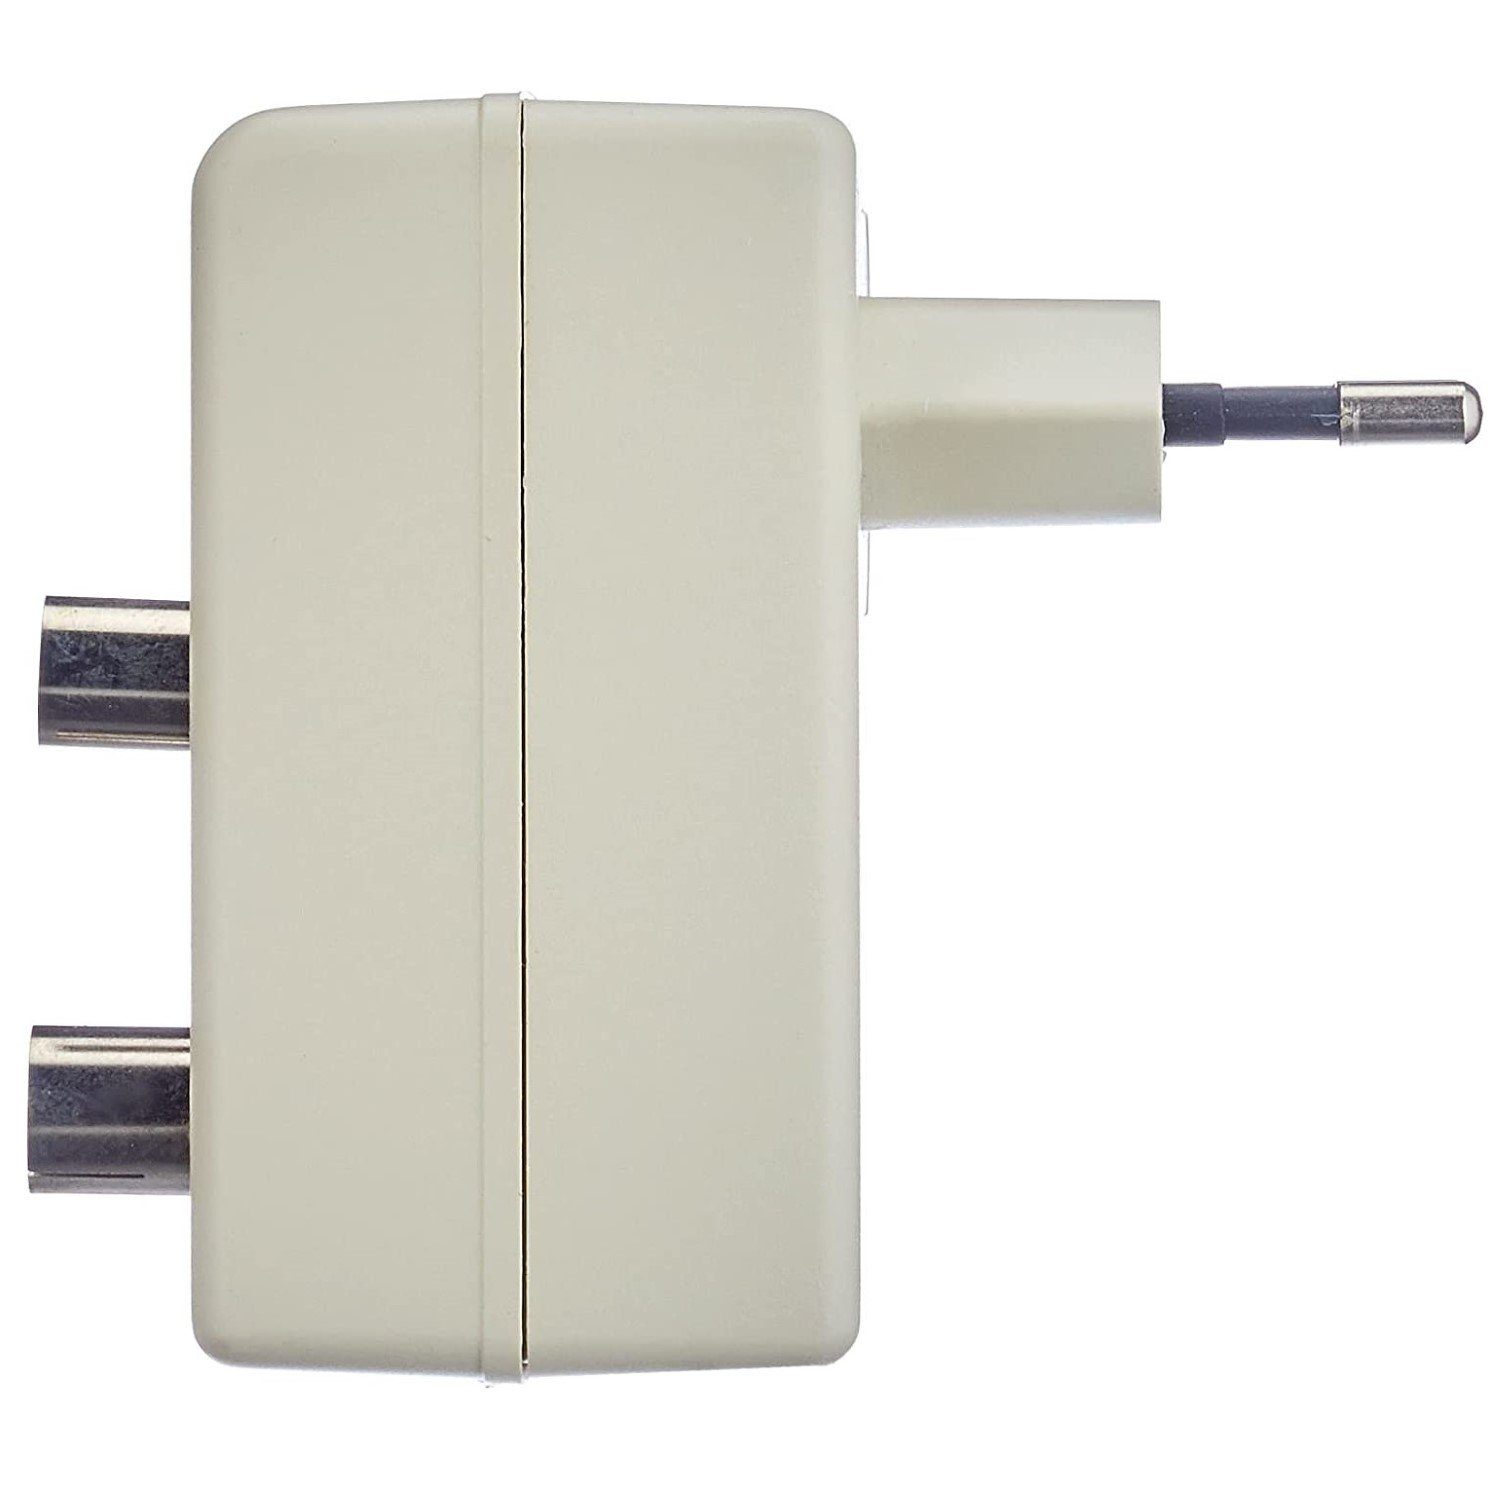 Hama Signalverstärker Verstärkung Audioverstärker 20 (Signal-Verstärker DVB-T2 Digital Antennen-Verstärker 20dB für dB) Kabel